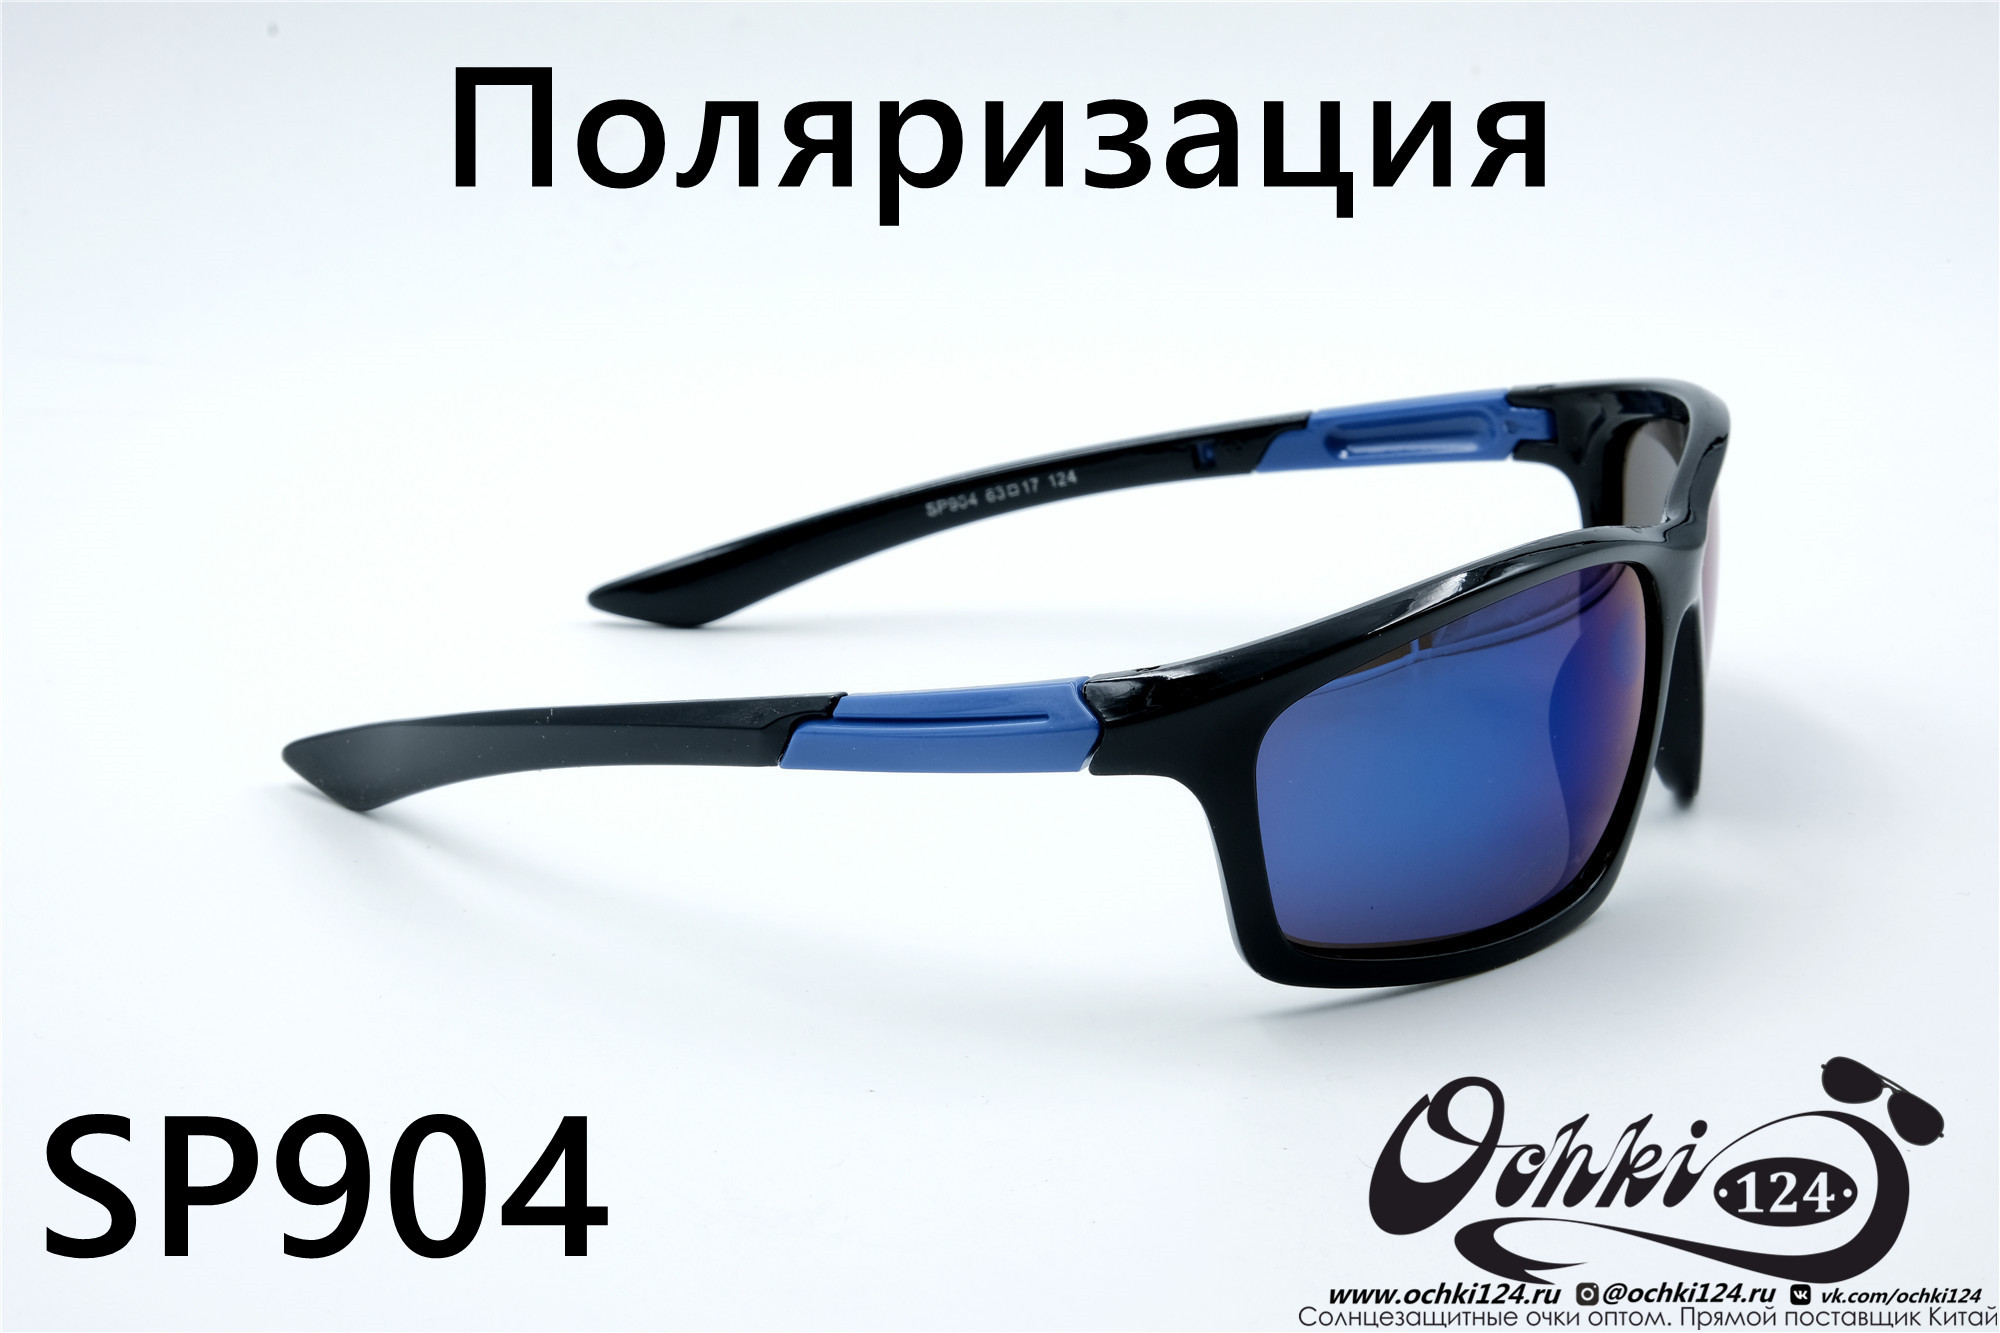  Солнцезащитные очки картинка 2022 Мужские Поляризованные Спорт Materice SP904-8 